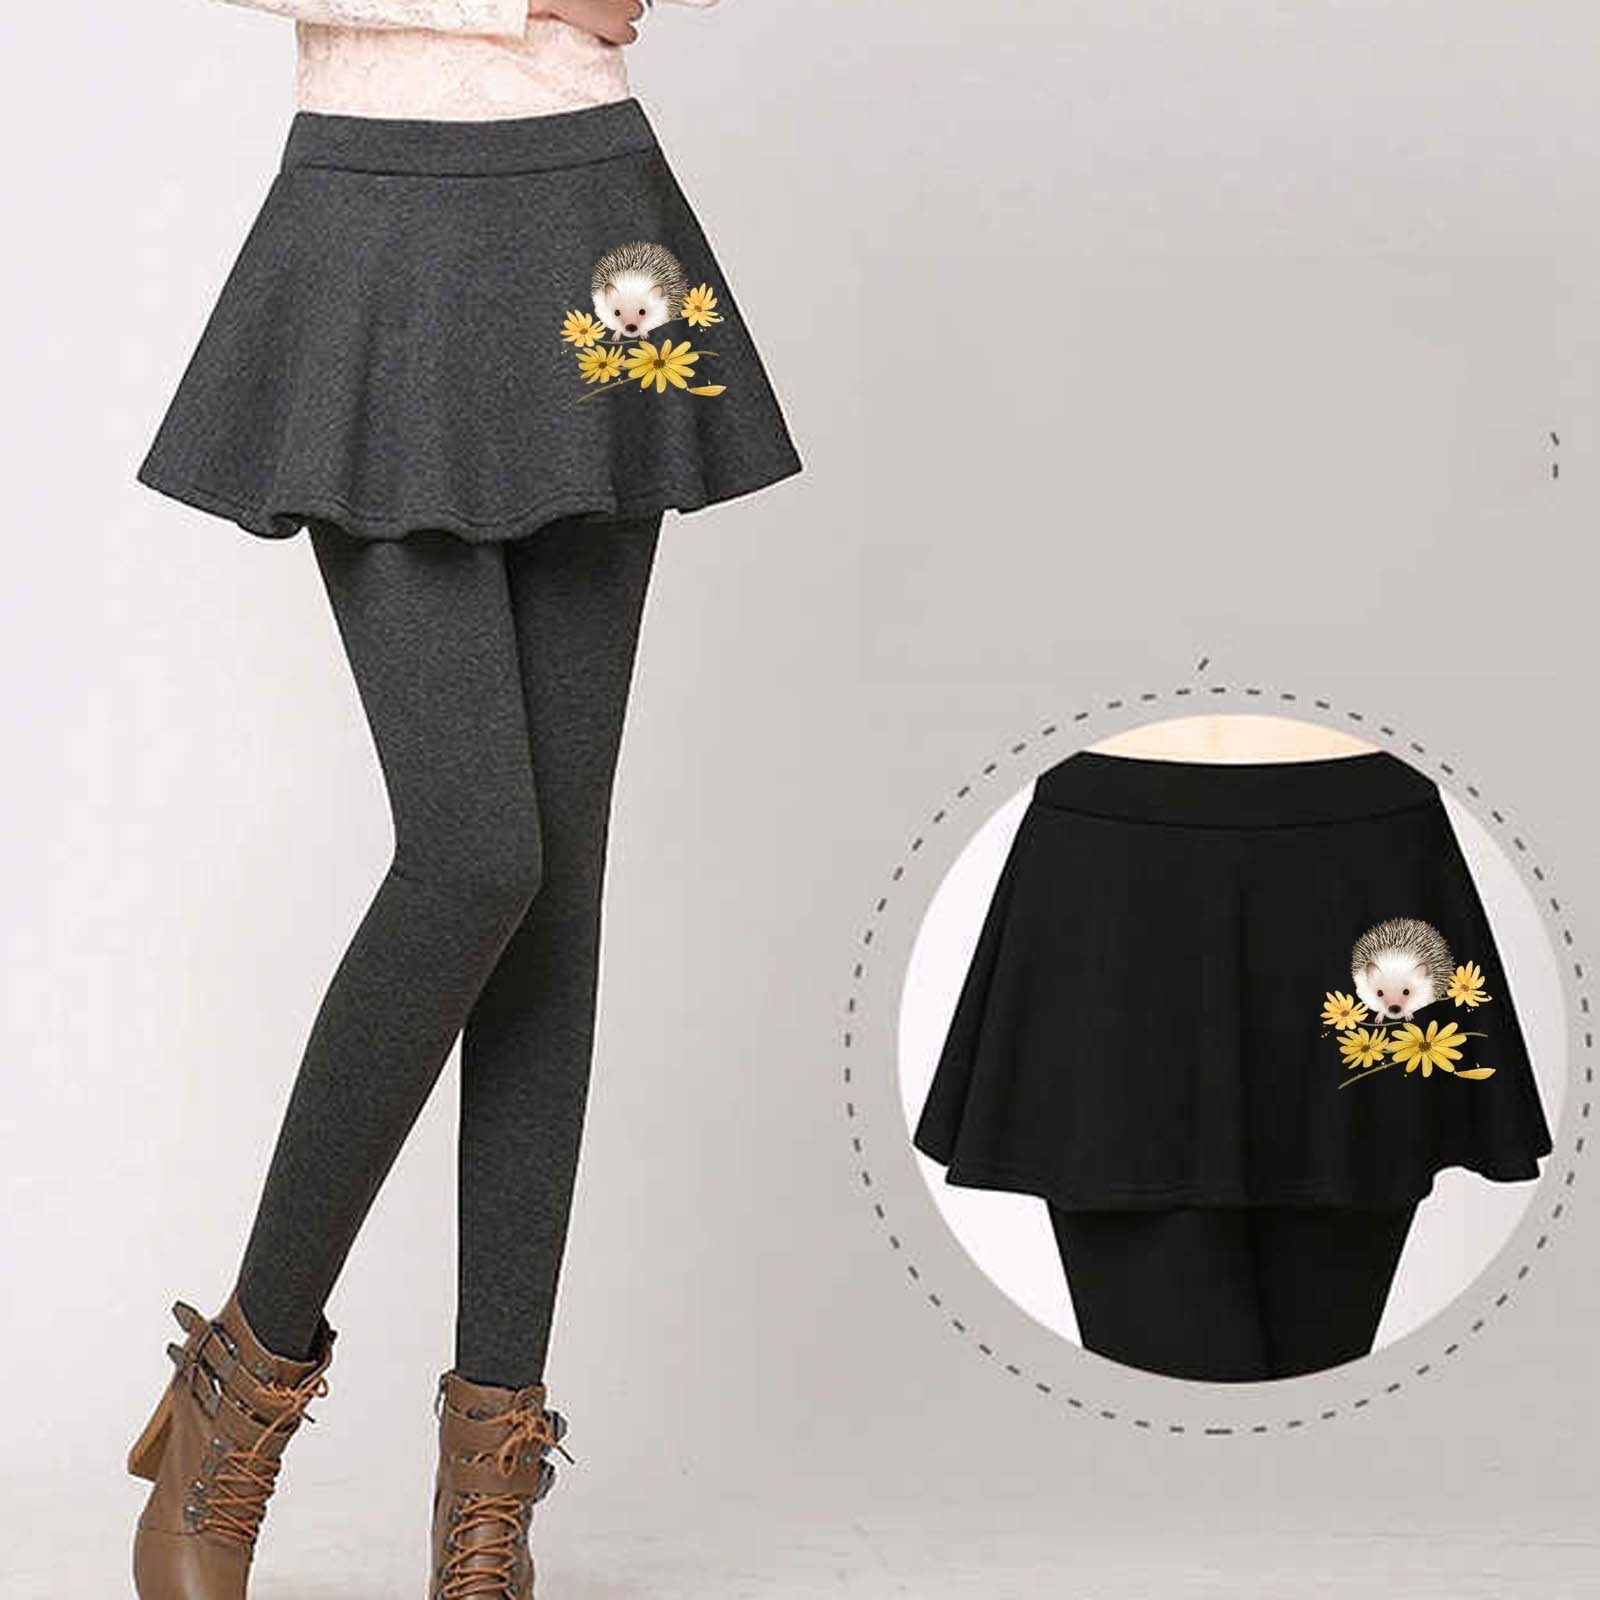 Black Skirted Leggings - Pants with Skirt Attached - Skirt Legging Combo